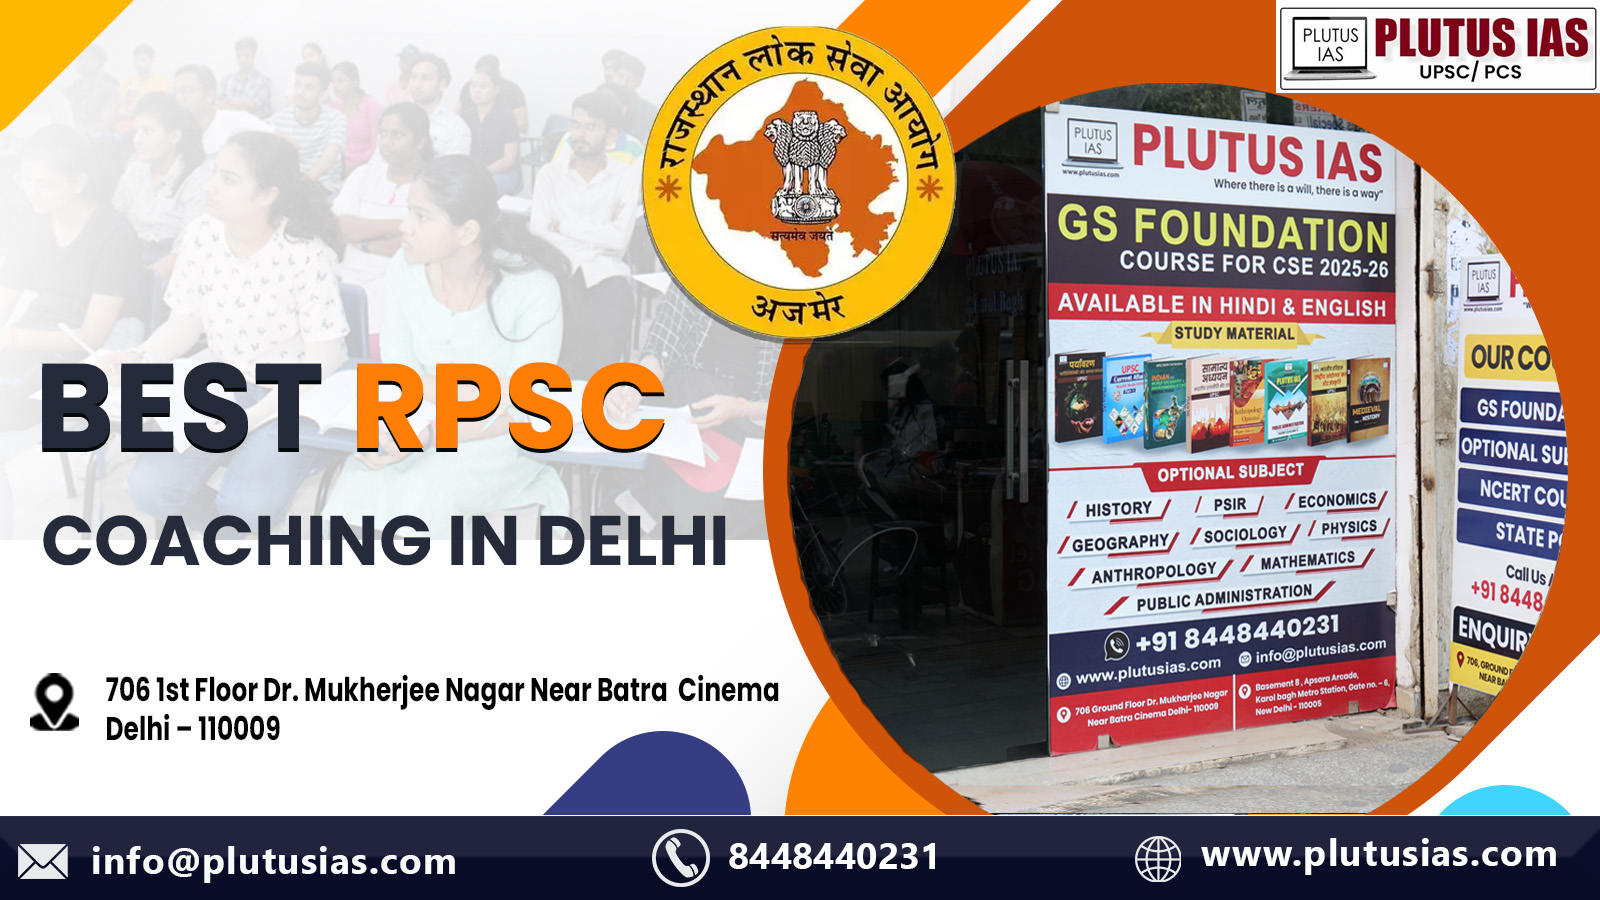 Plutus IAS Best RPSC Coaching in Delhi